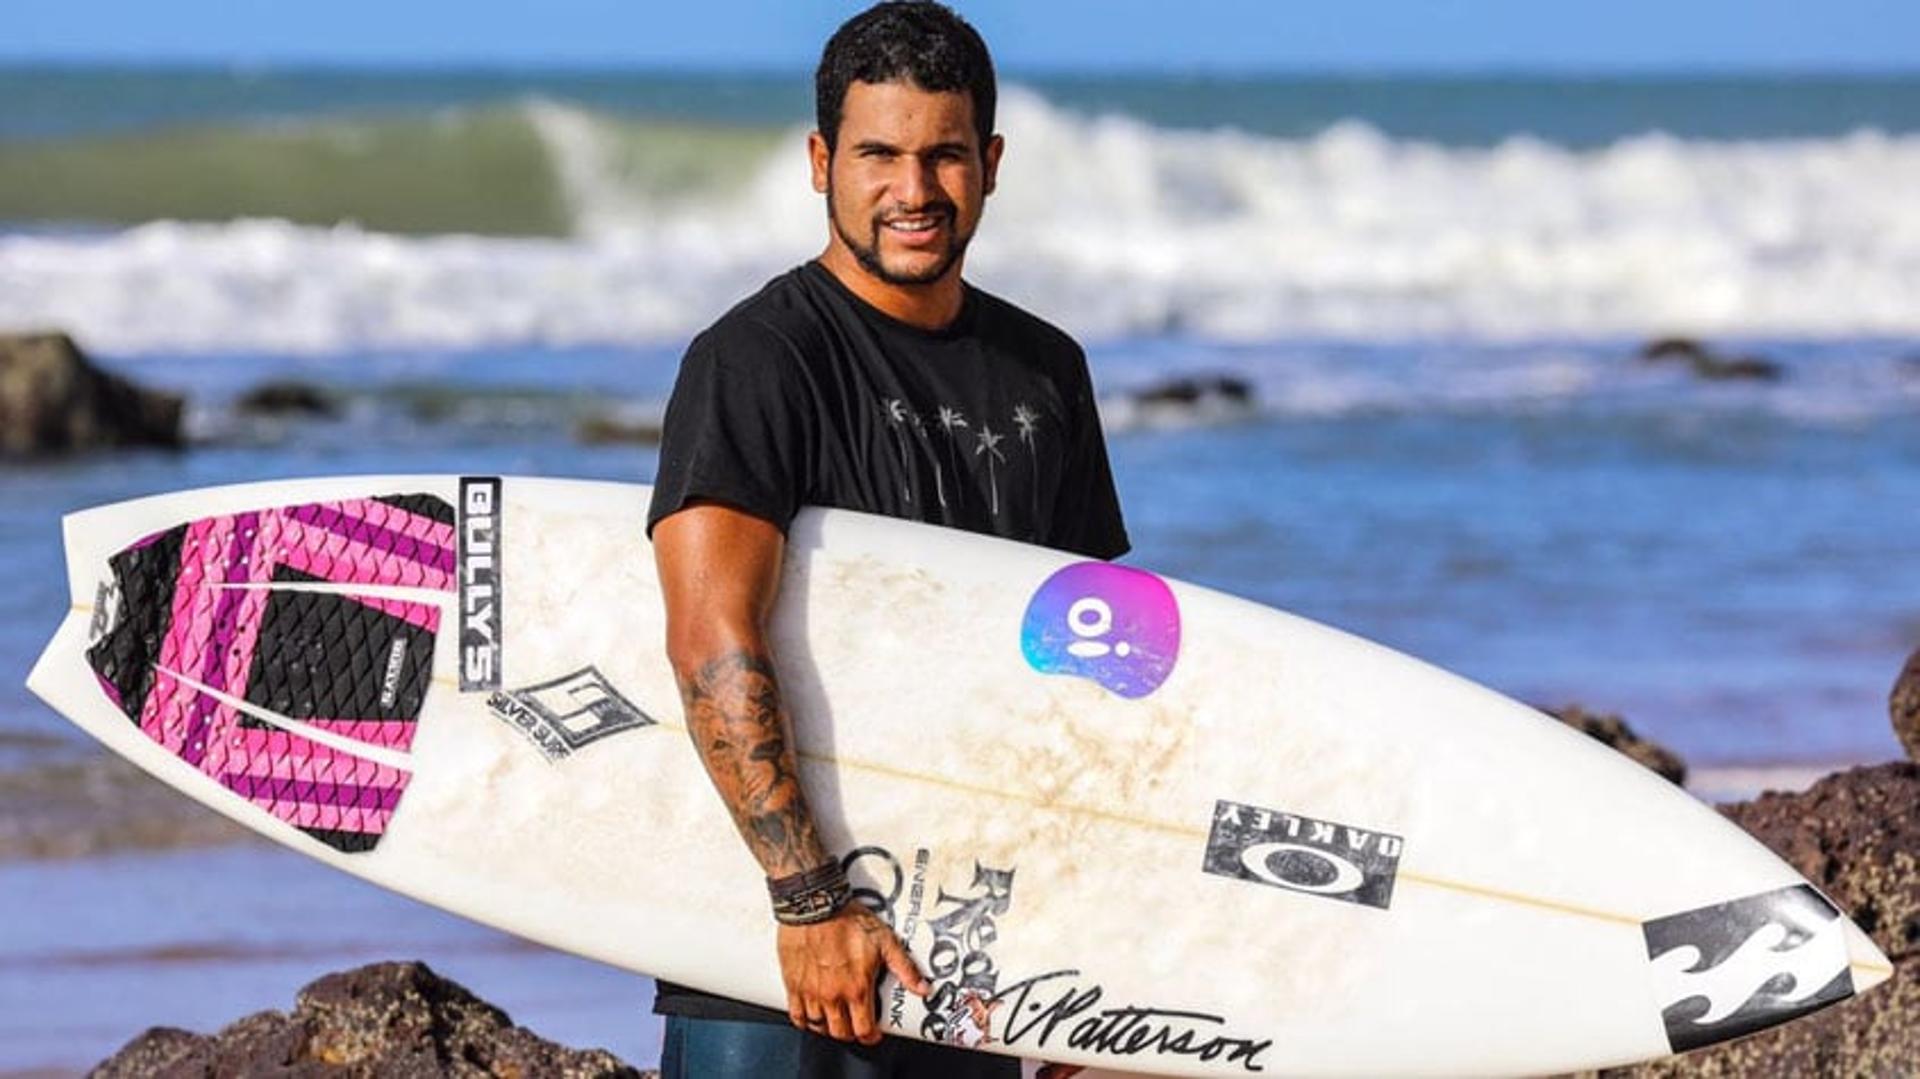 Oi anuncia patrocínio de Ítalo Ferreira e chega a cinco surfistas brasileiros no Mundial de Surfe